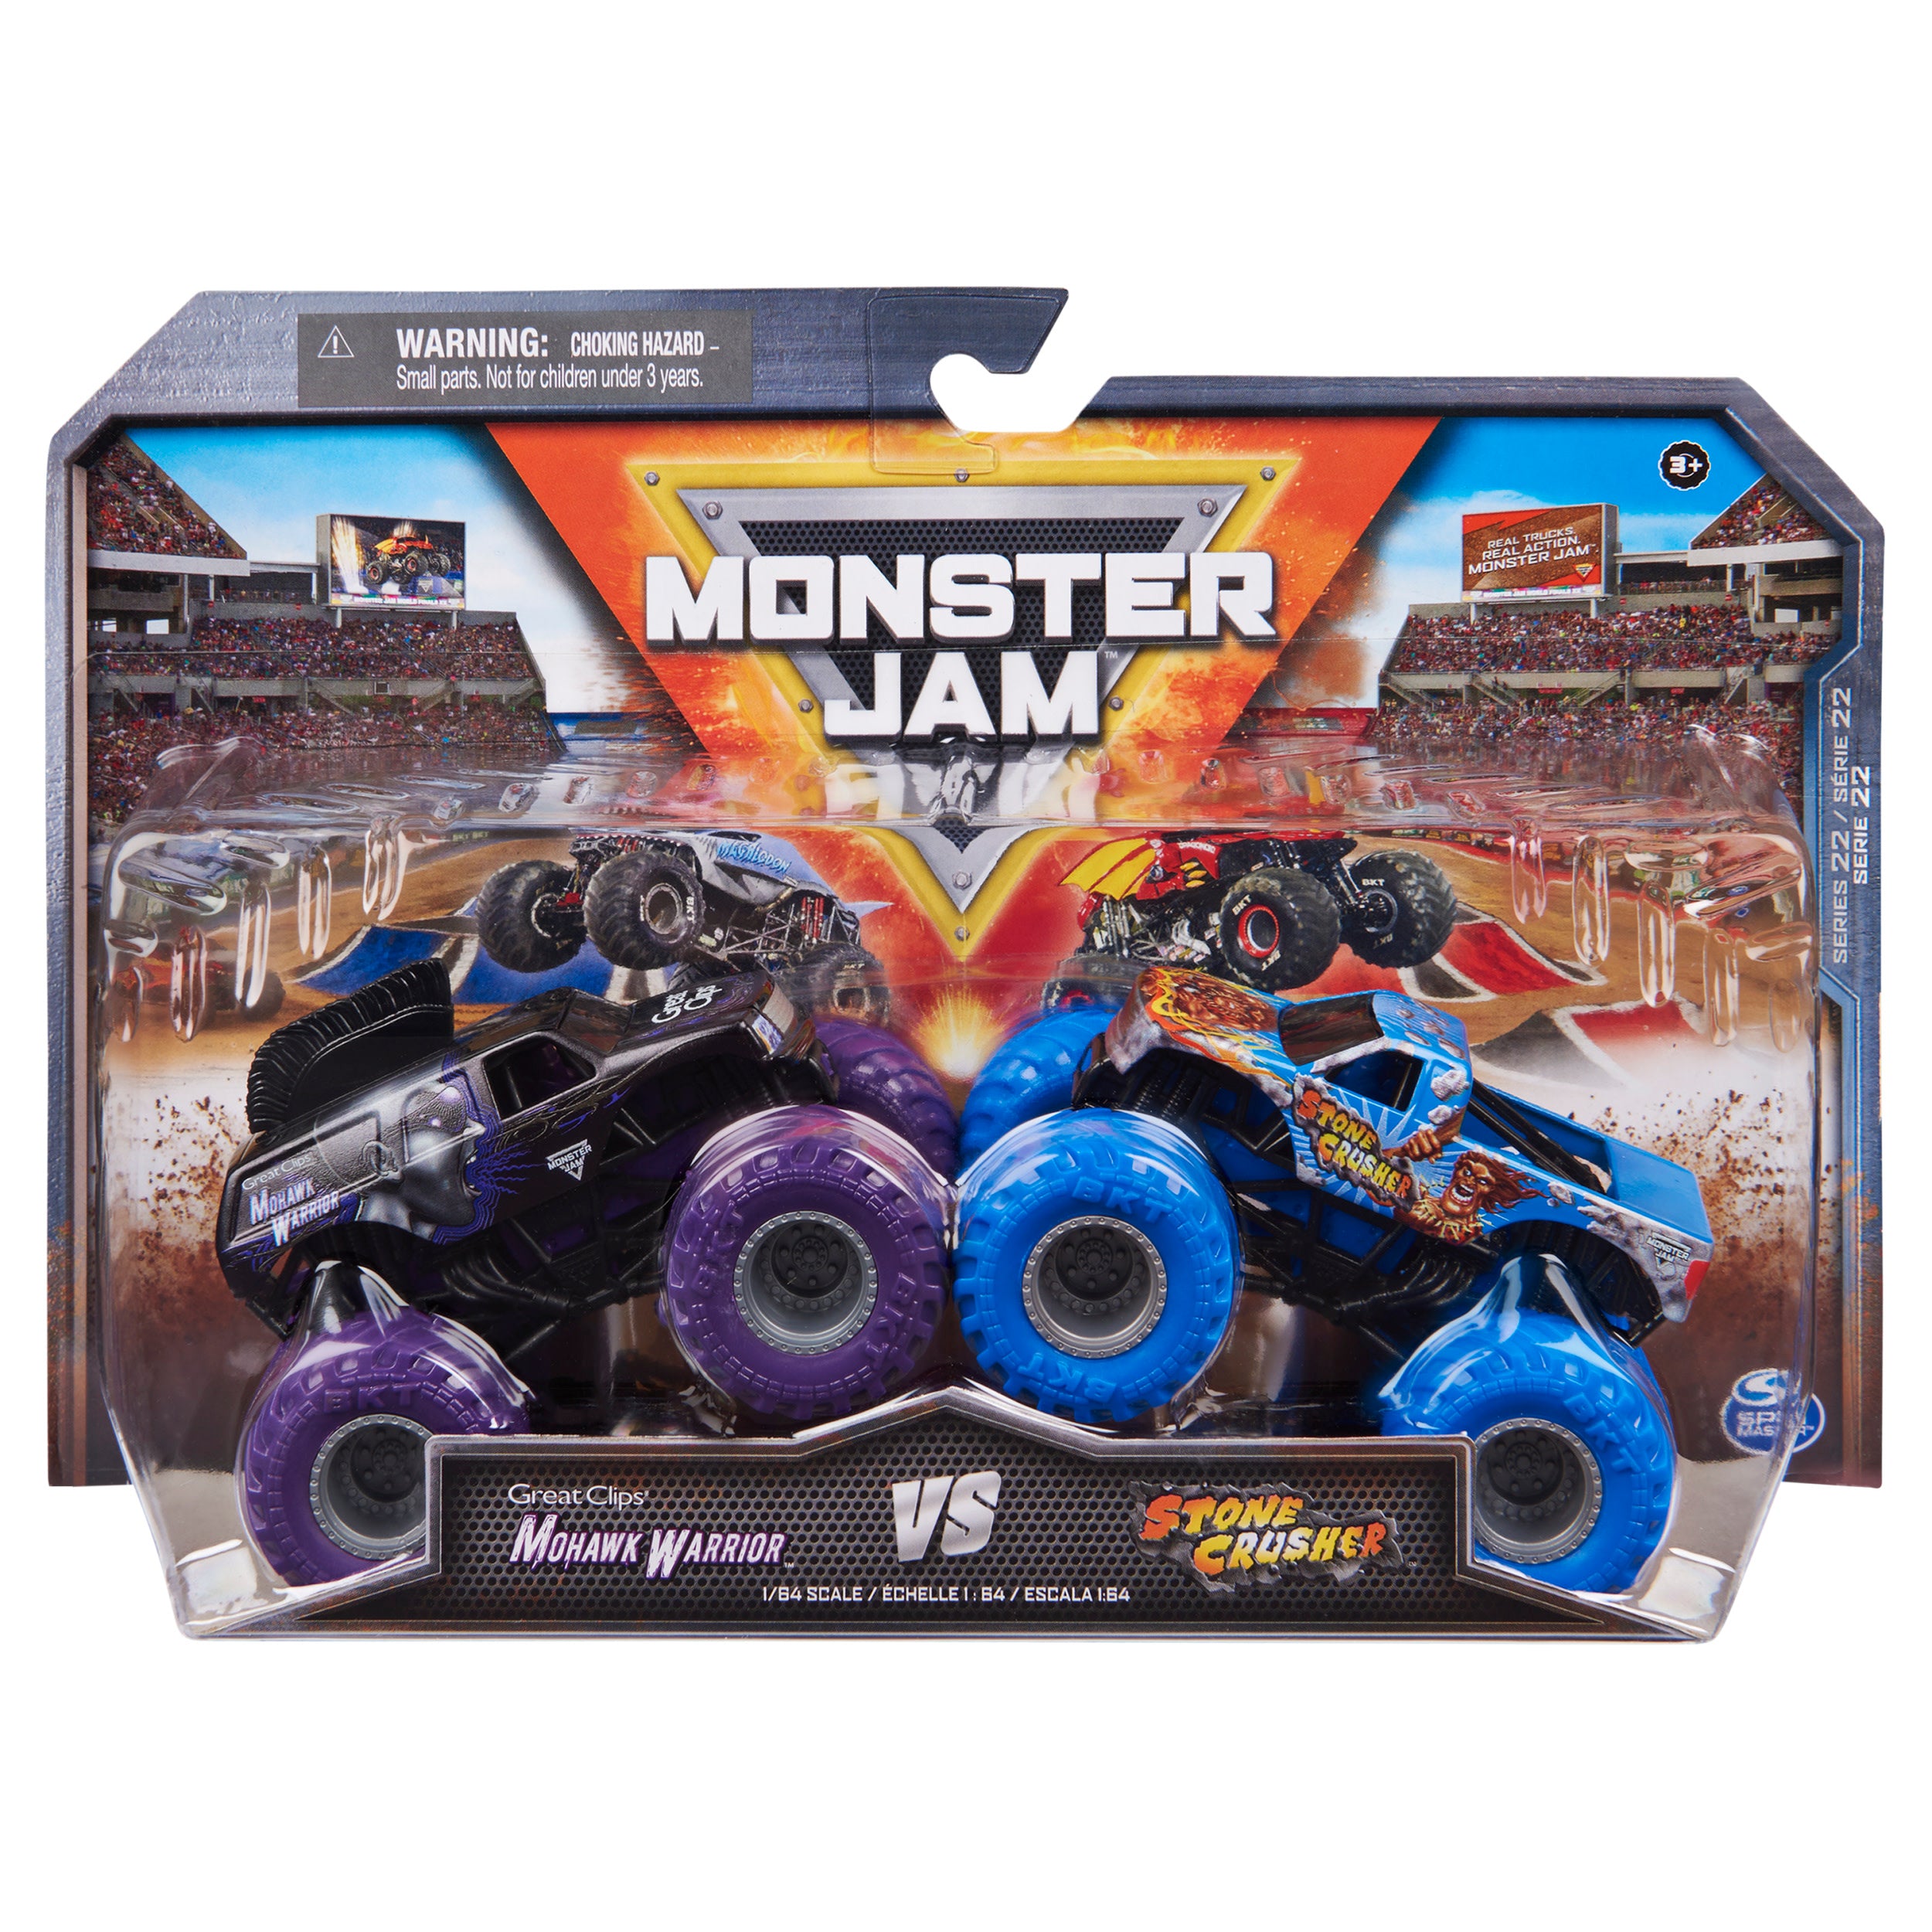 Monster Jam: Mohawk Warrior Vs Stone Crusher Escala 1/64 2 Pack